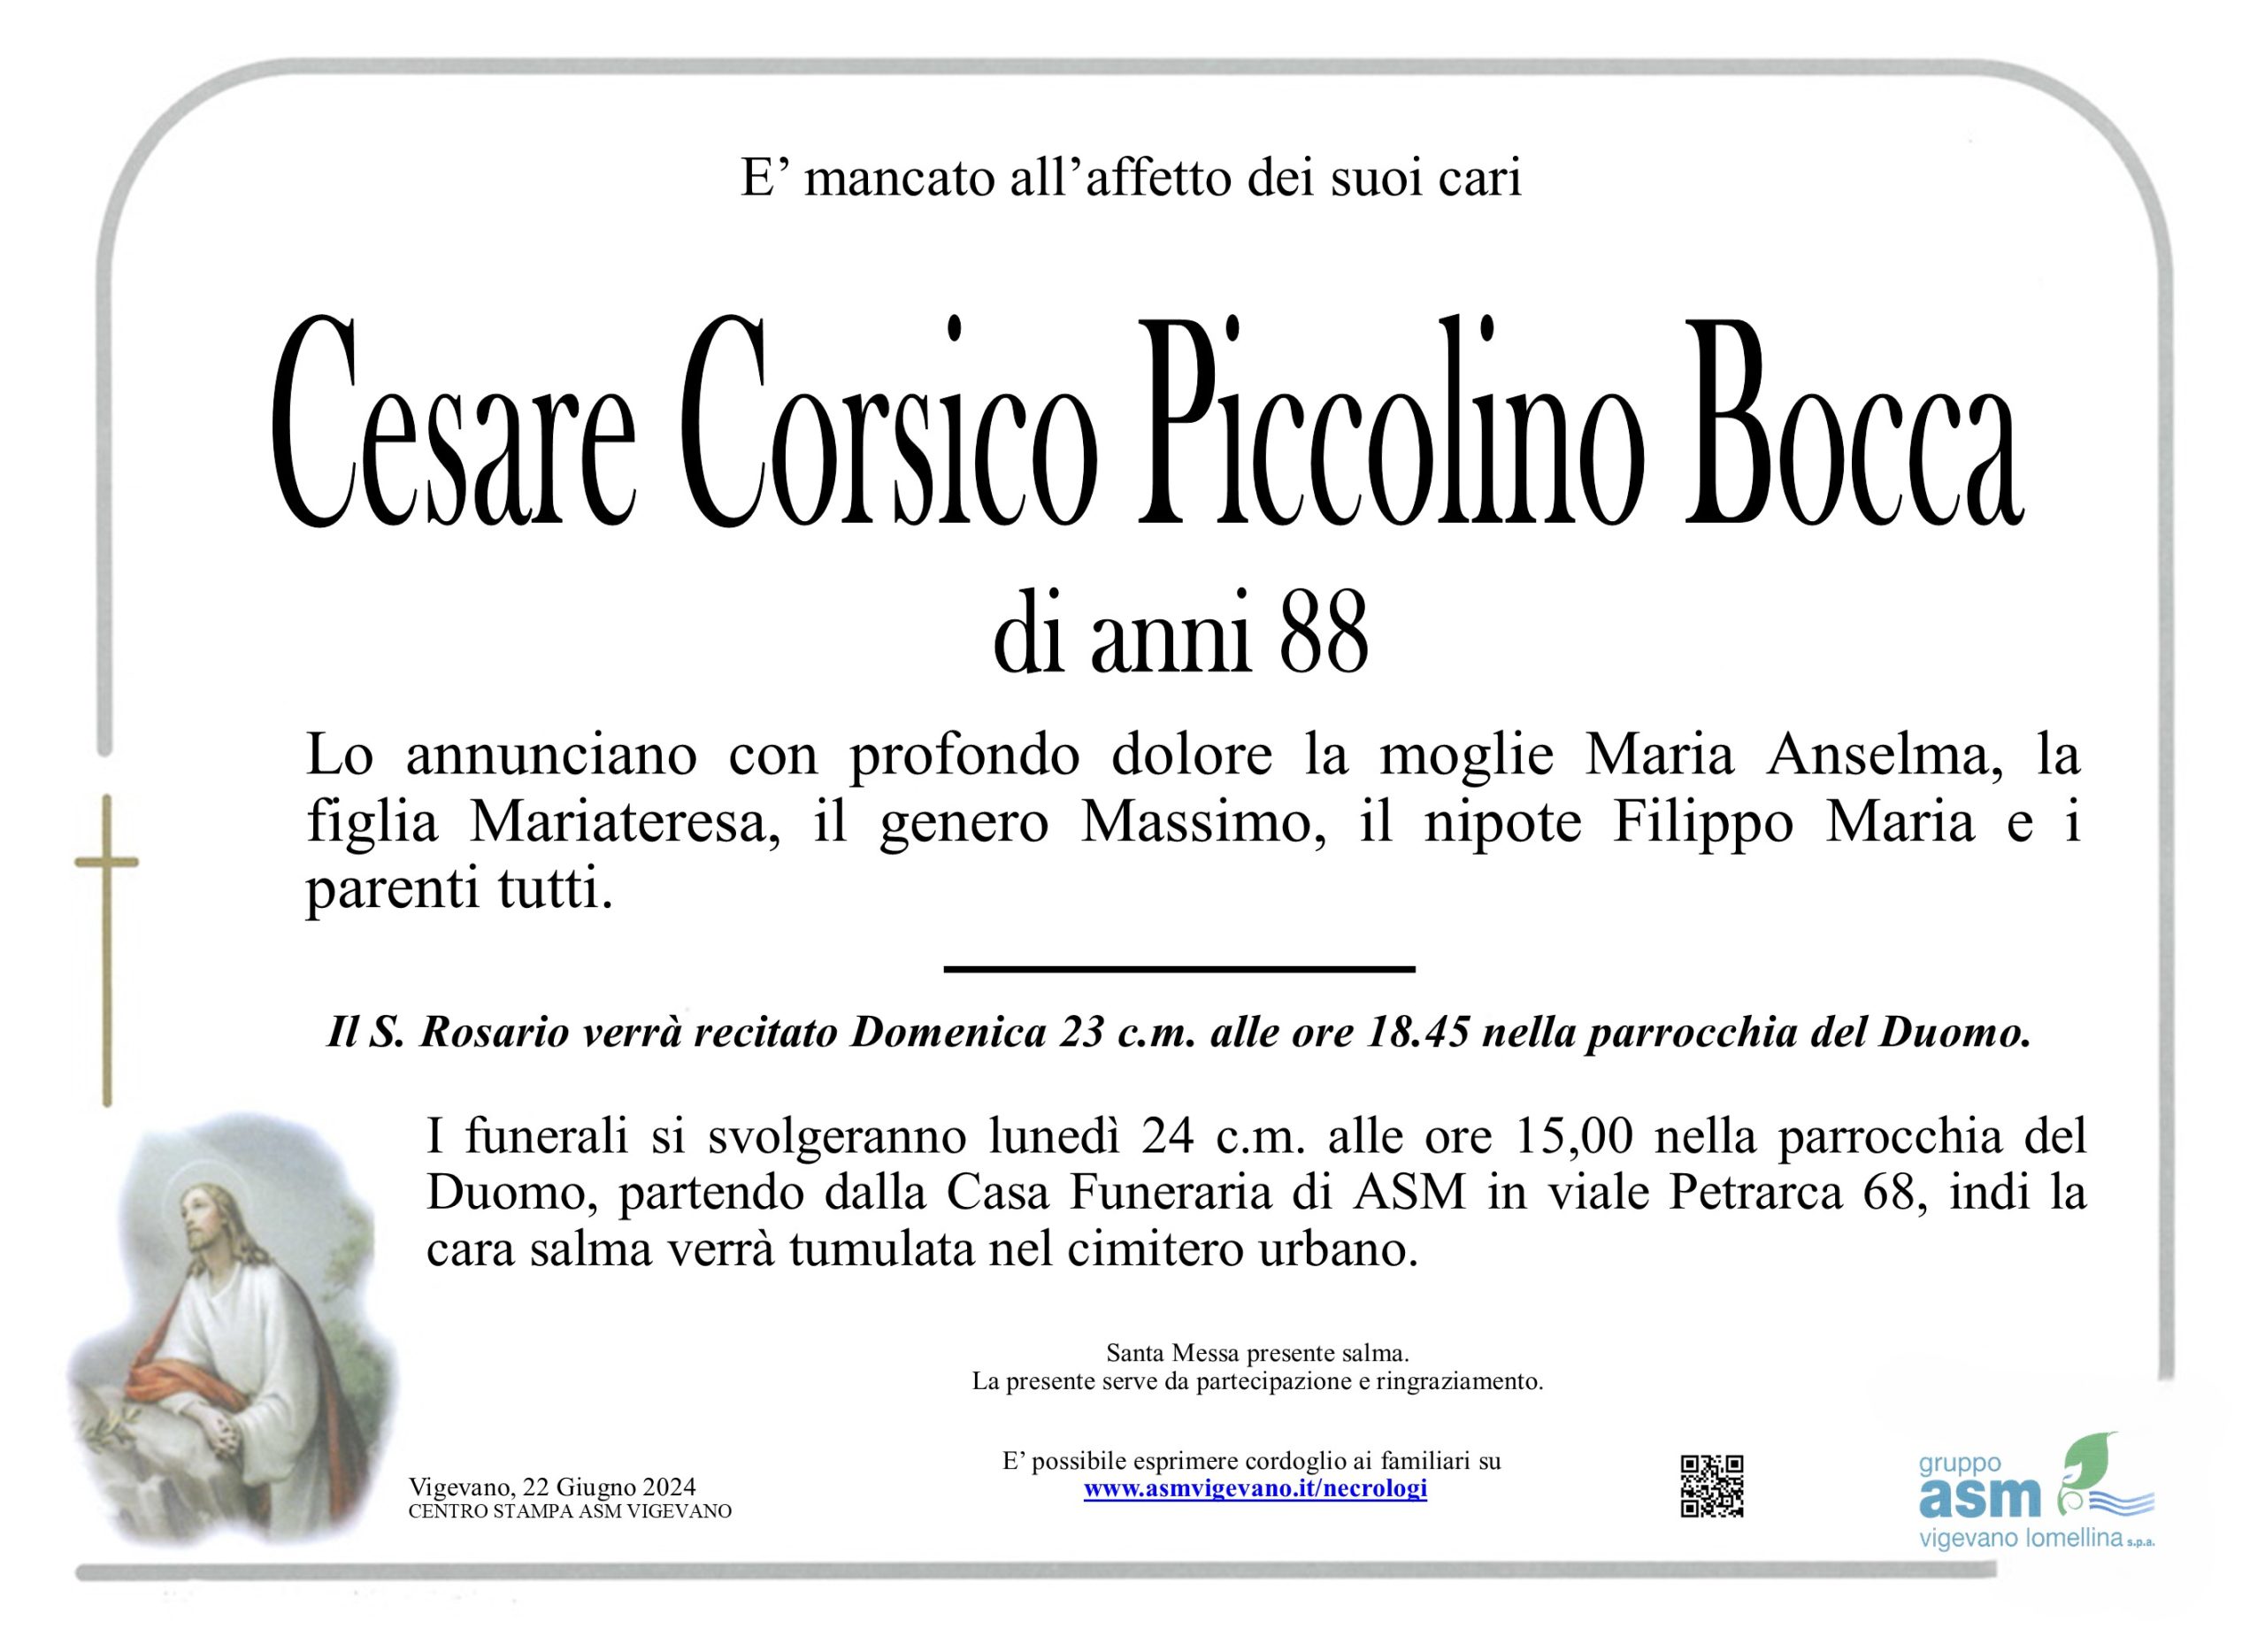 Cesare Corsico Piccolino Bocca